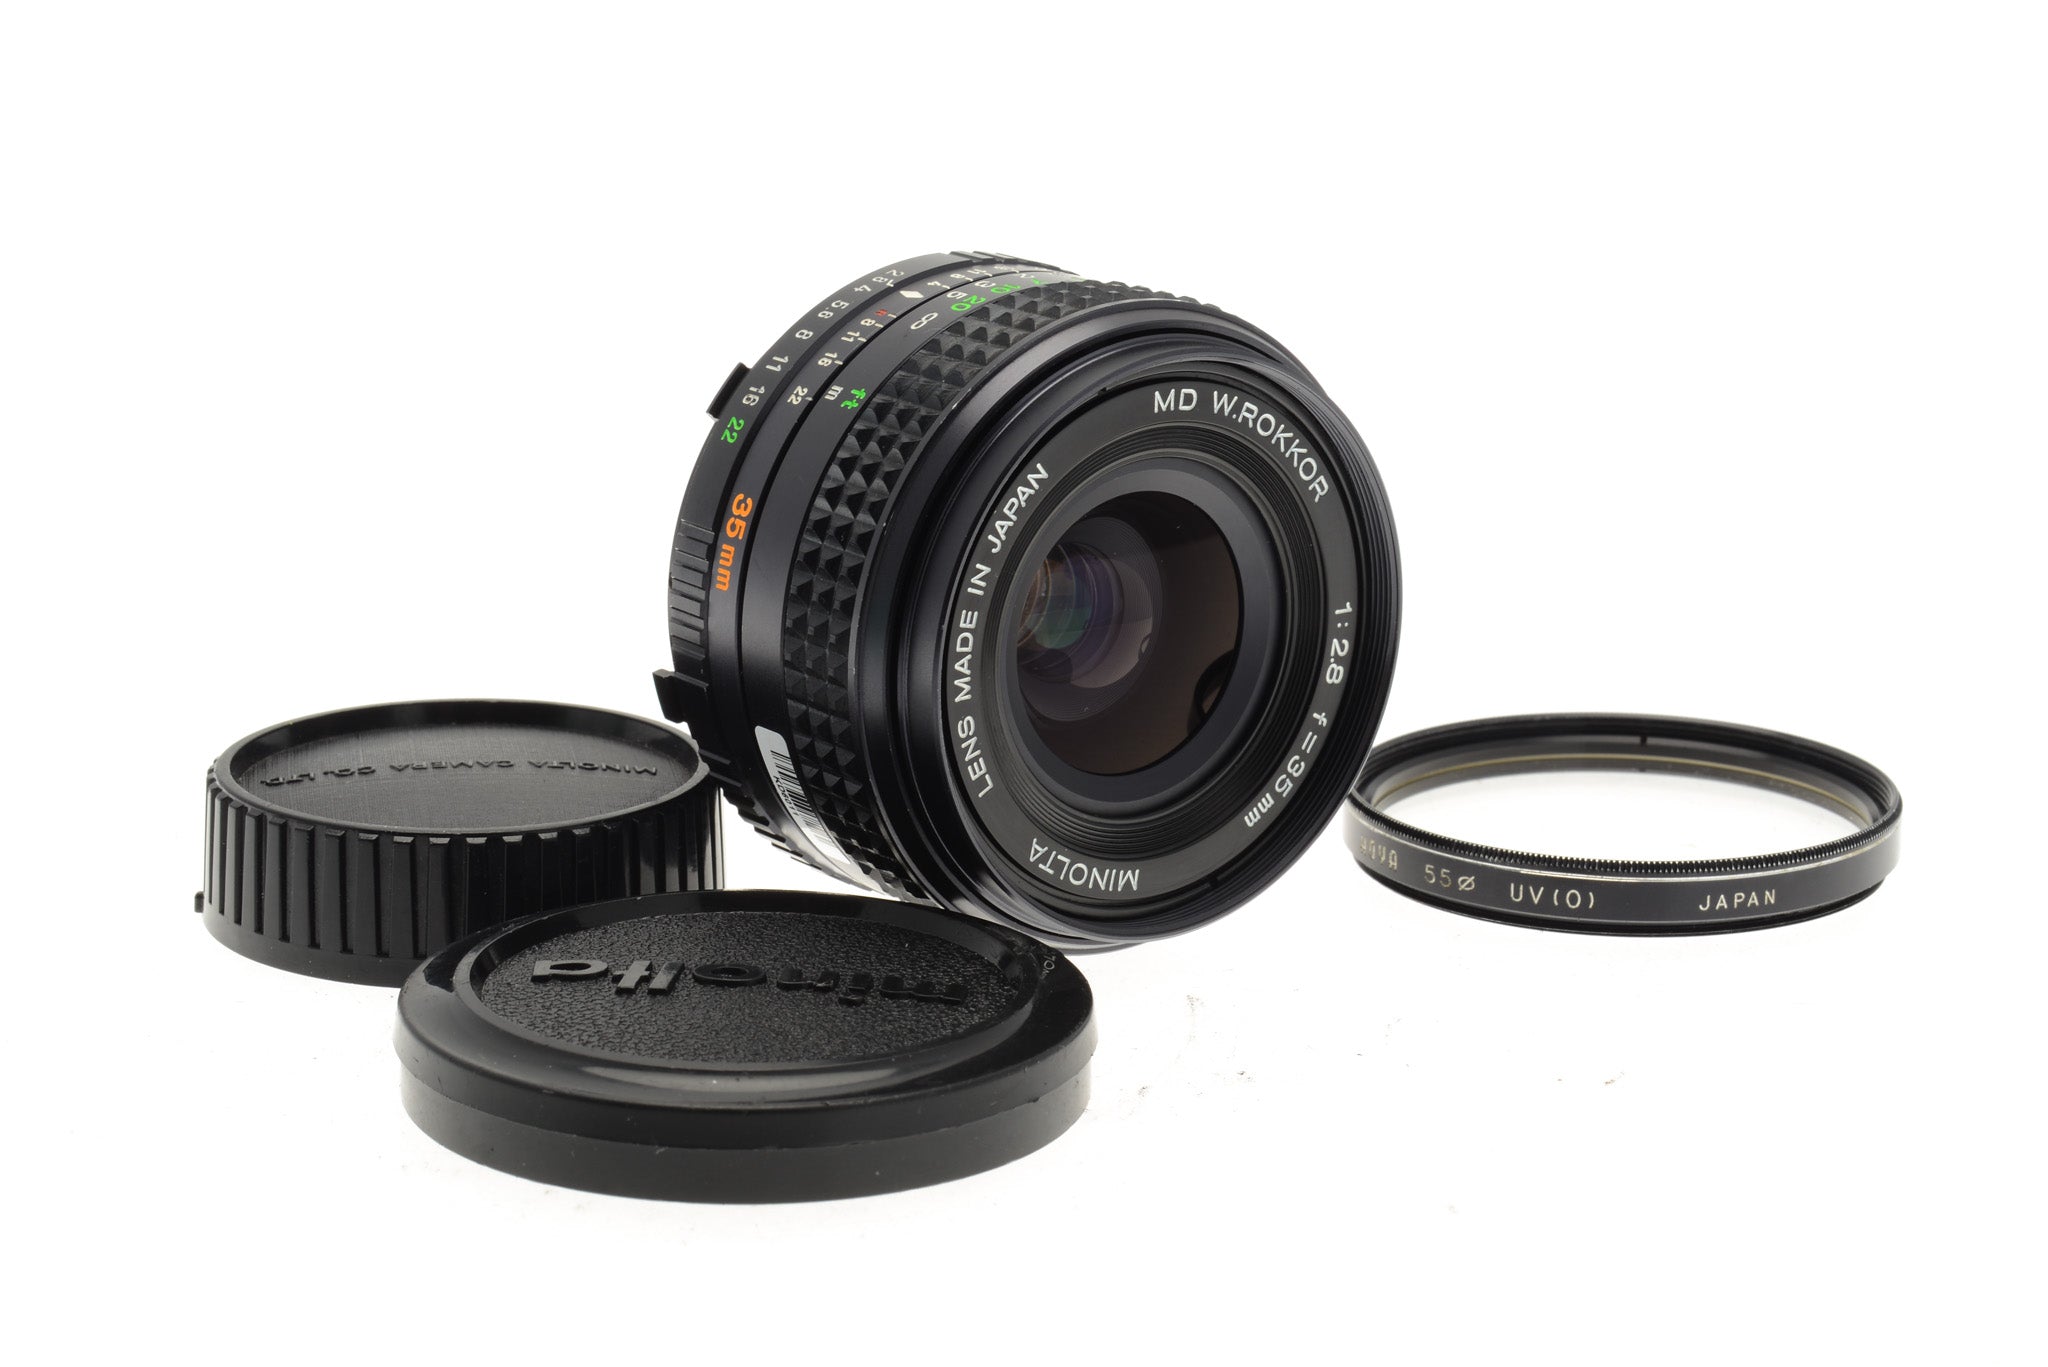 Minolta 35mm f2.8 MD W.Rokkor - Lens